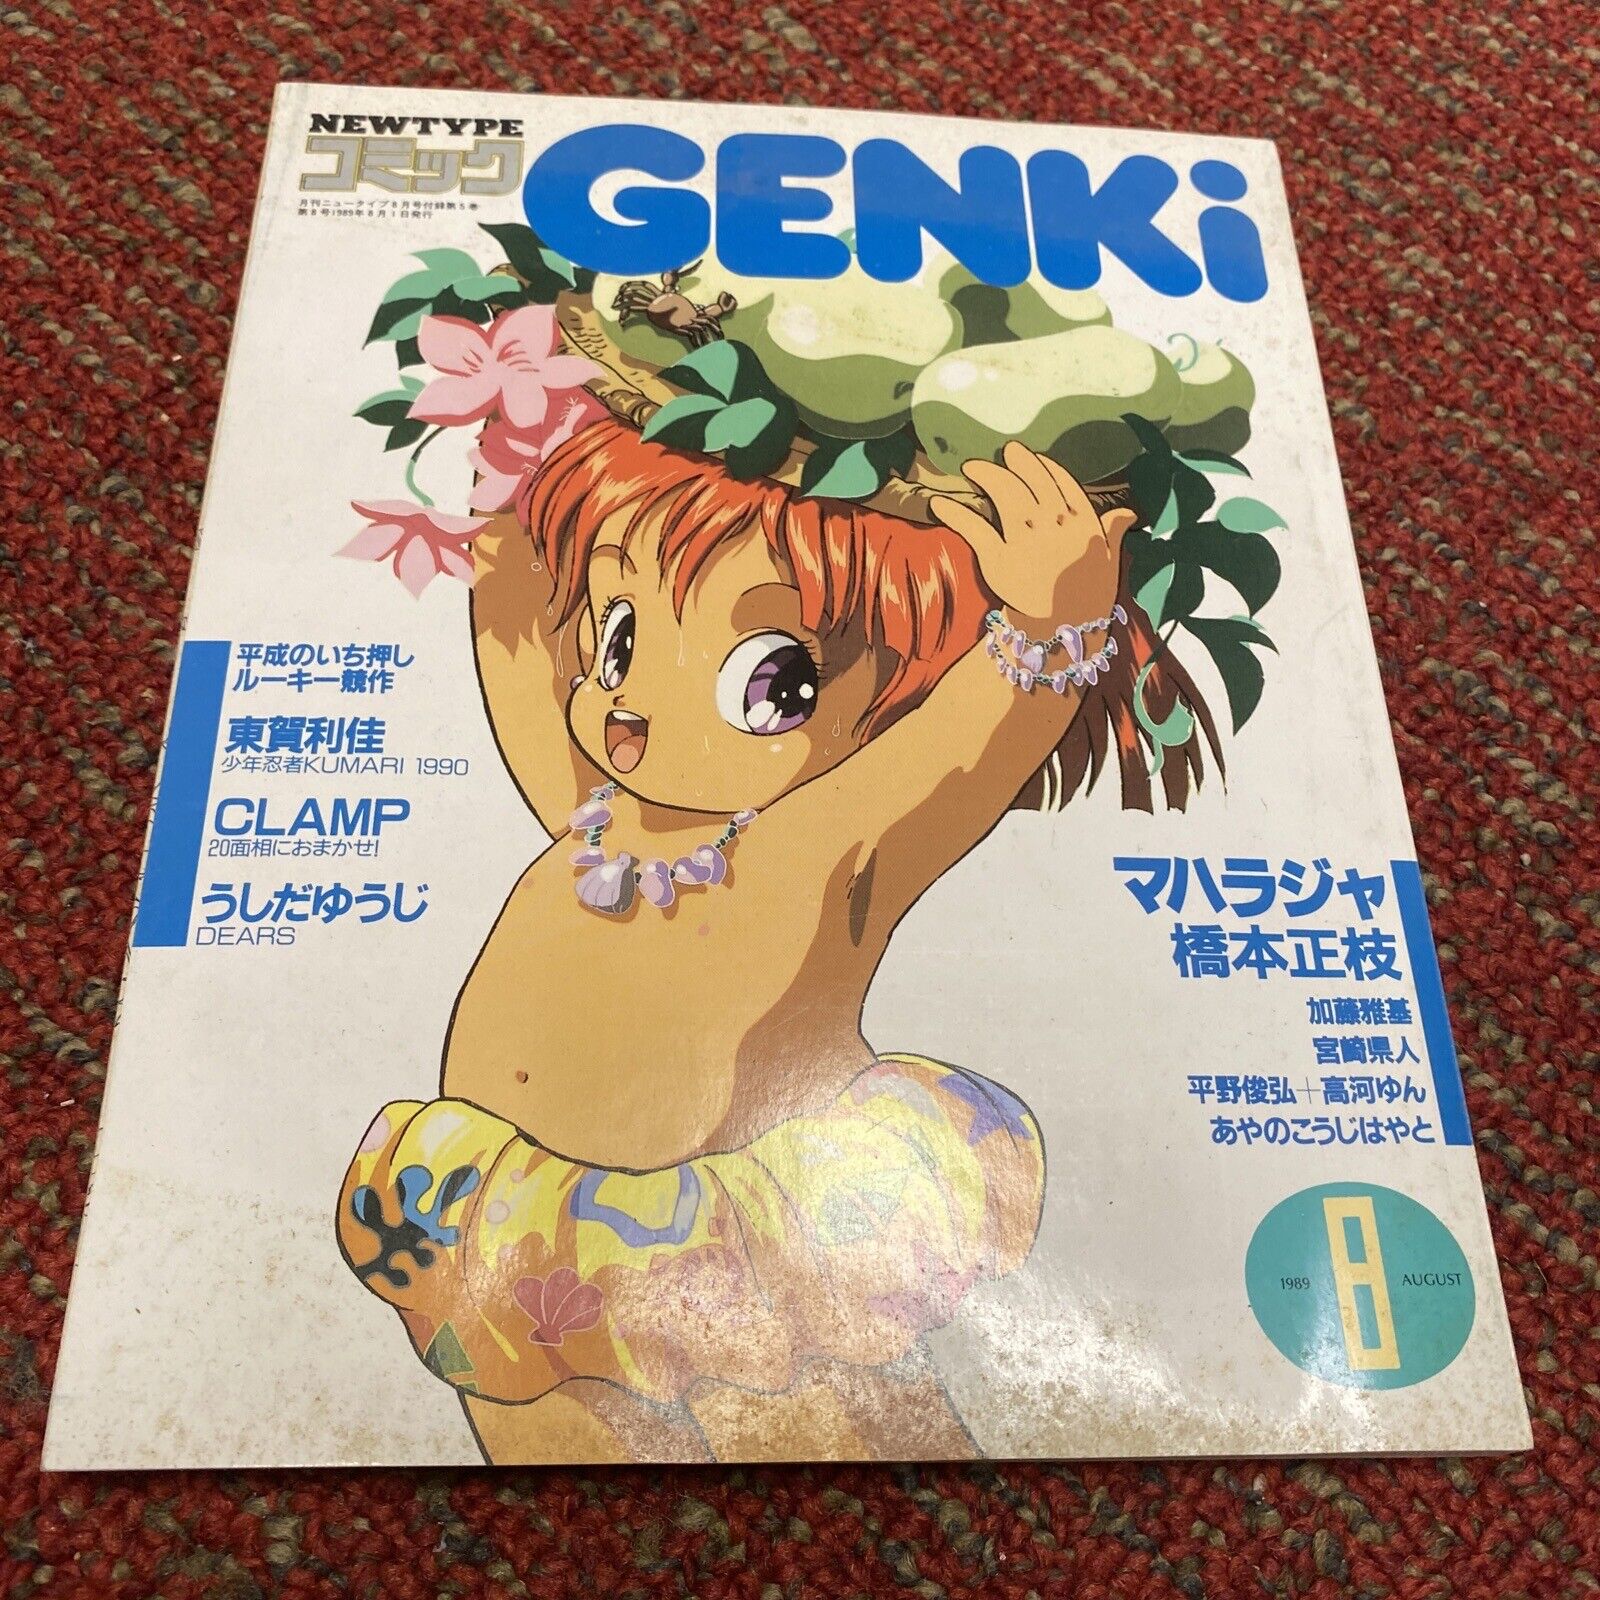 Newtype Magazine MANGA GENKI # 8 August 1989 ANIME Fantasy Battle Action